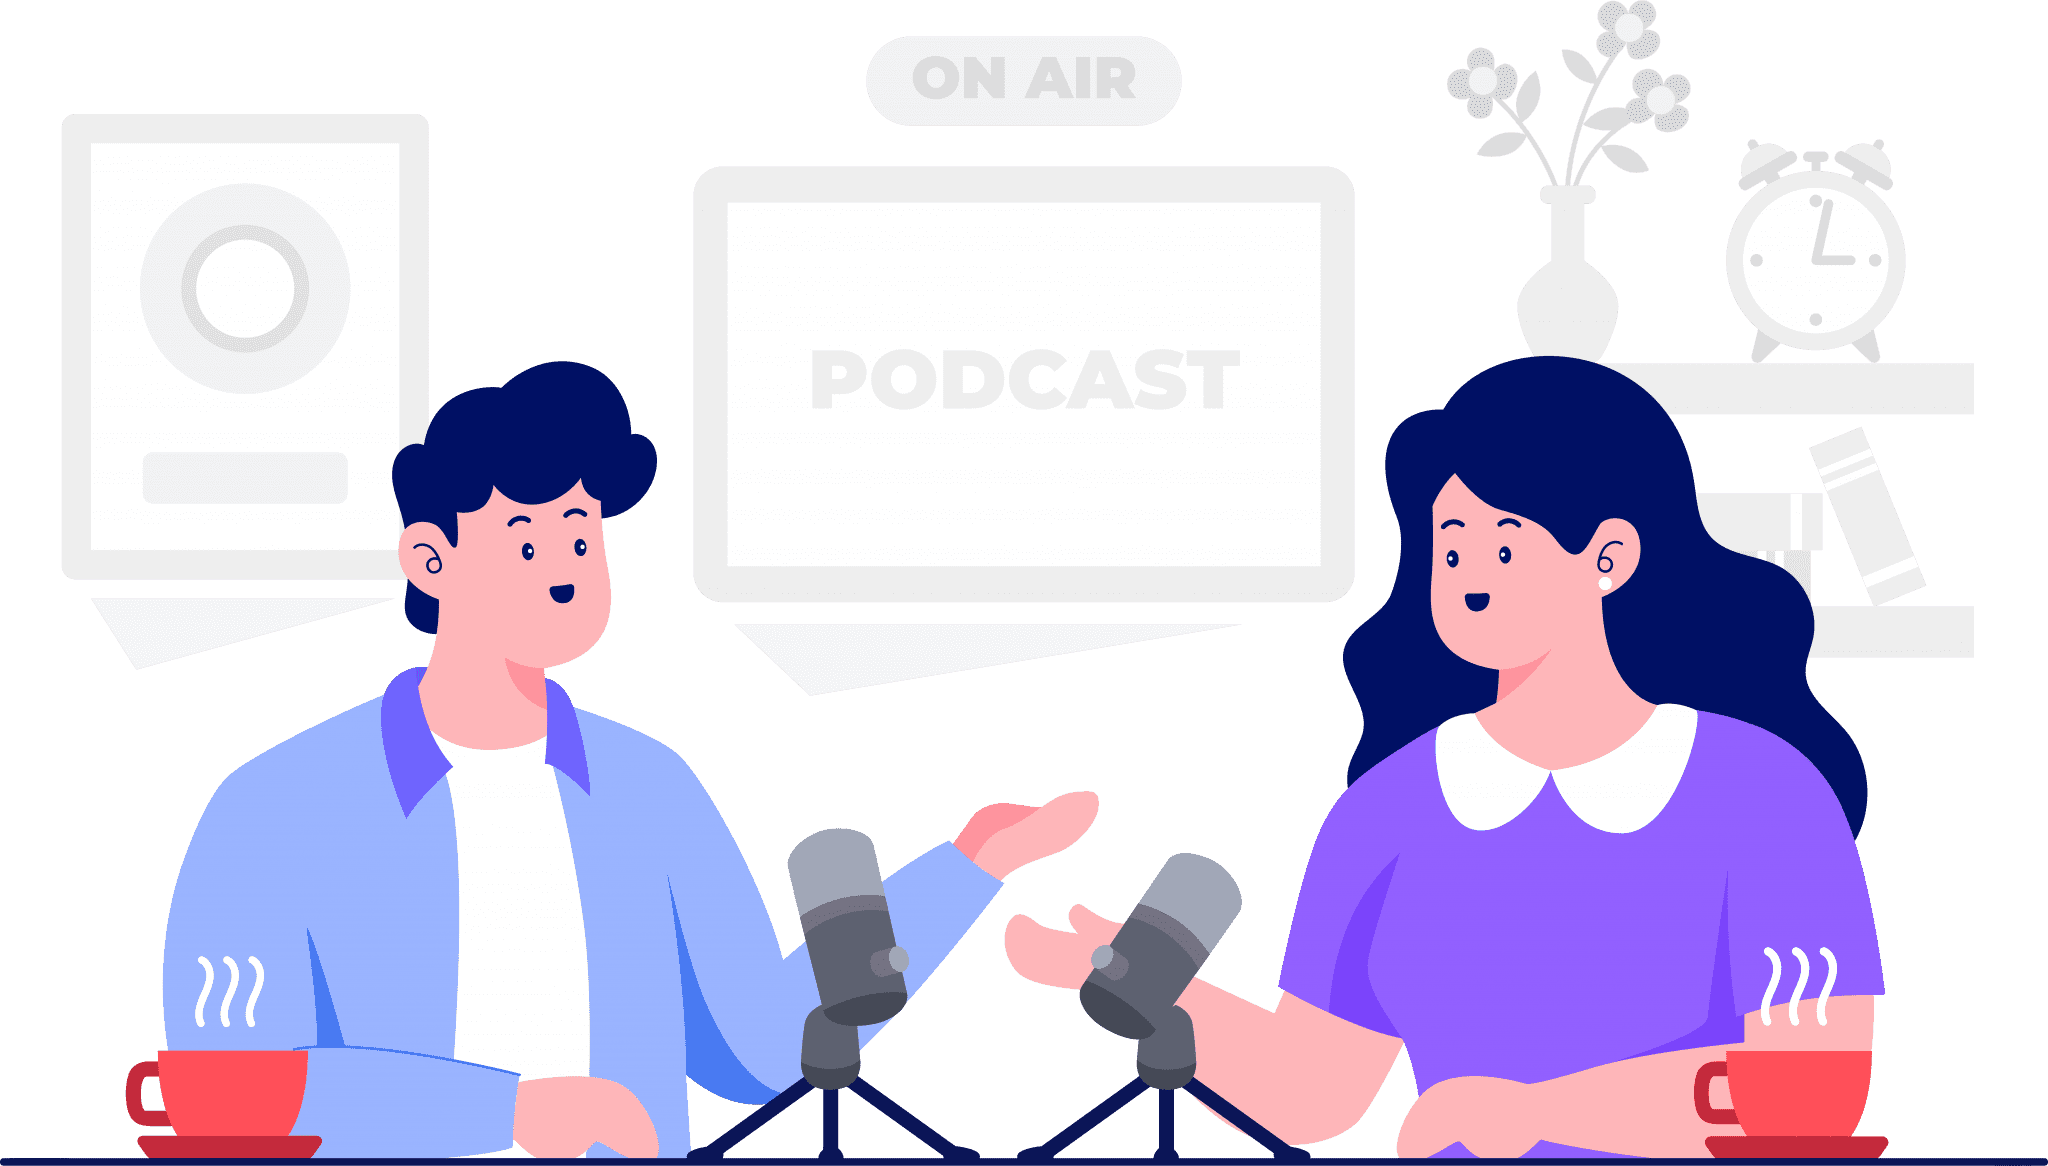 podcast-yesi-education